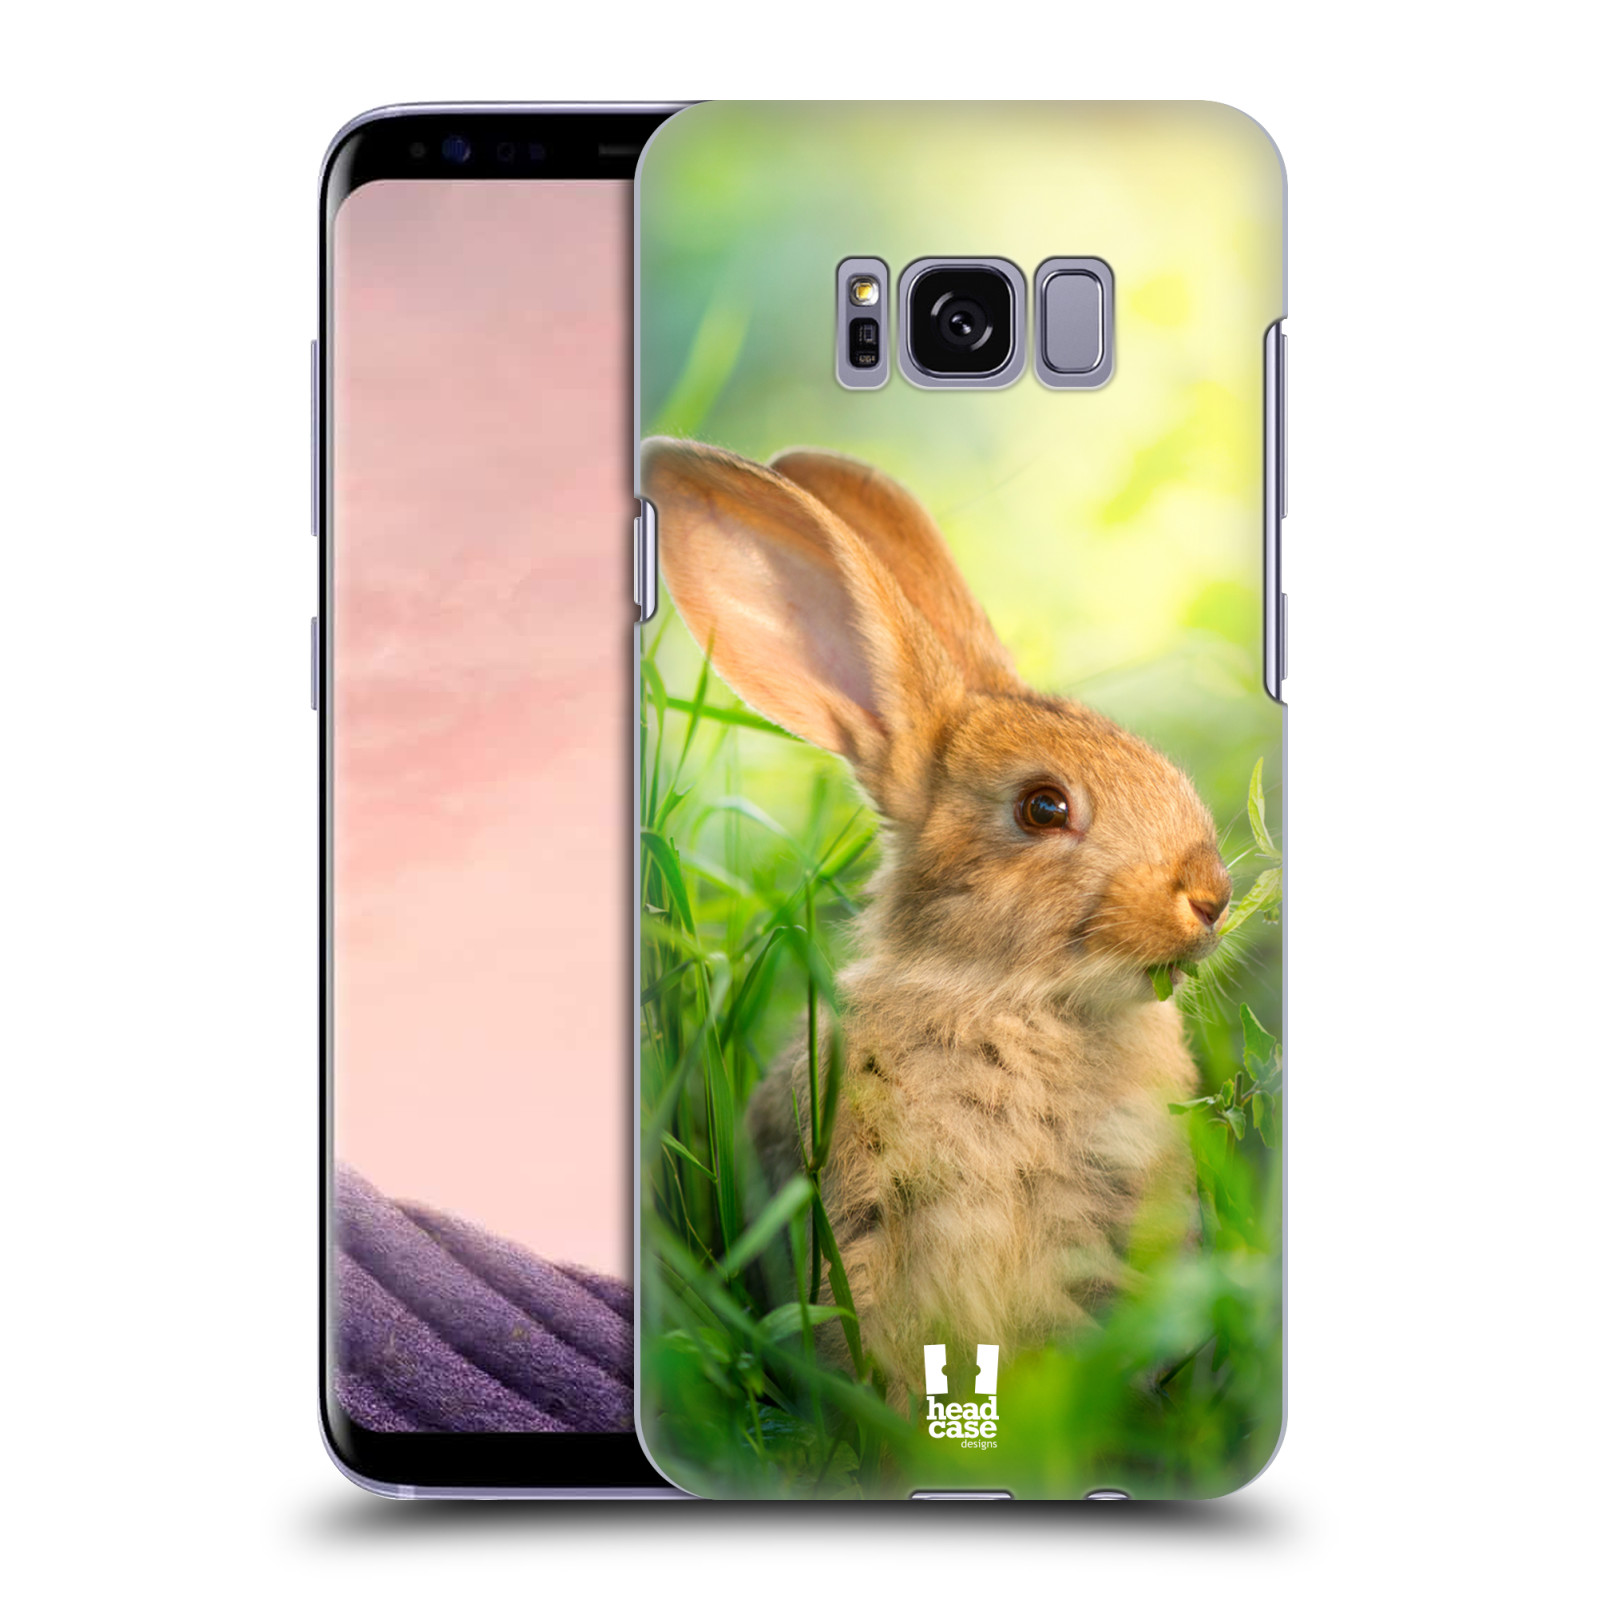 HEAD CASE plastový obal na mobil Samsung Galaxy S8 vzor Divočina, Divoký život a zvířata foto ZAJÍČEK V TRÁVĚ ZELENÁ